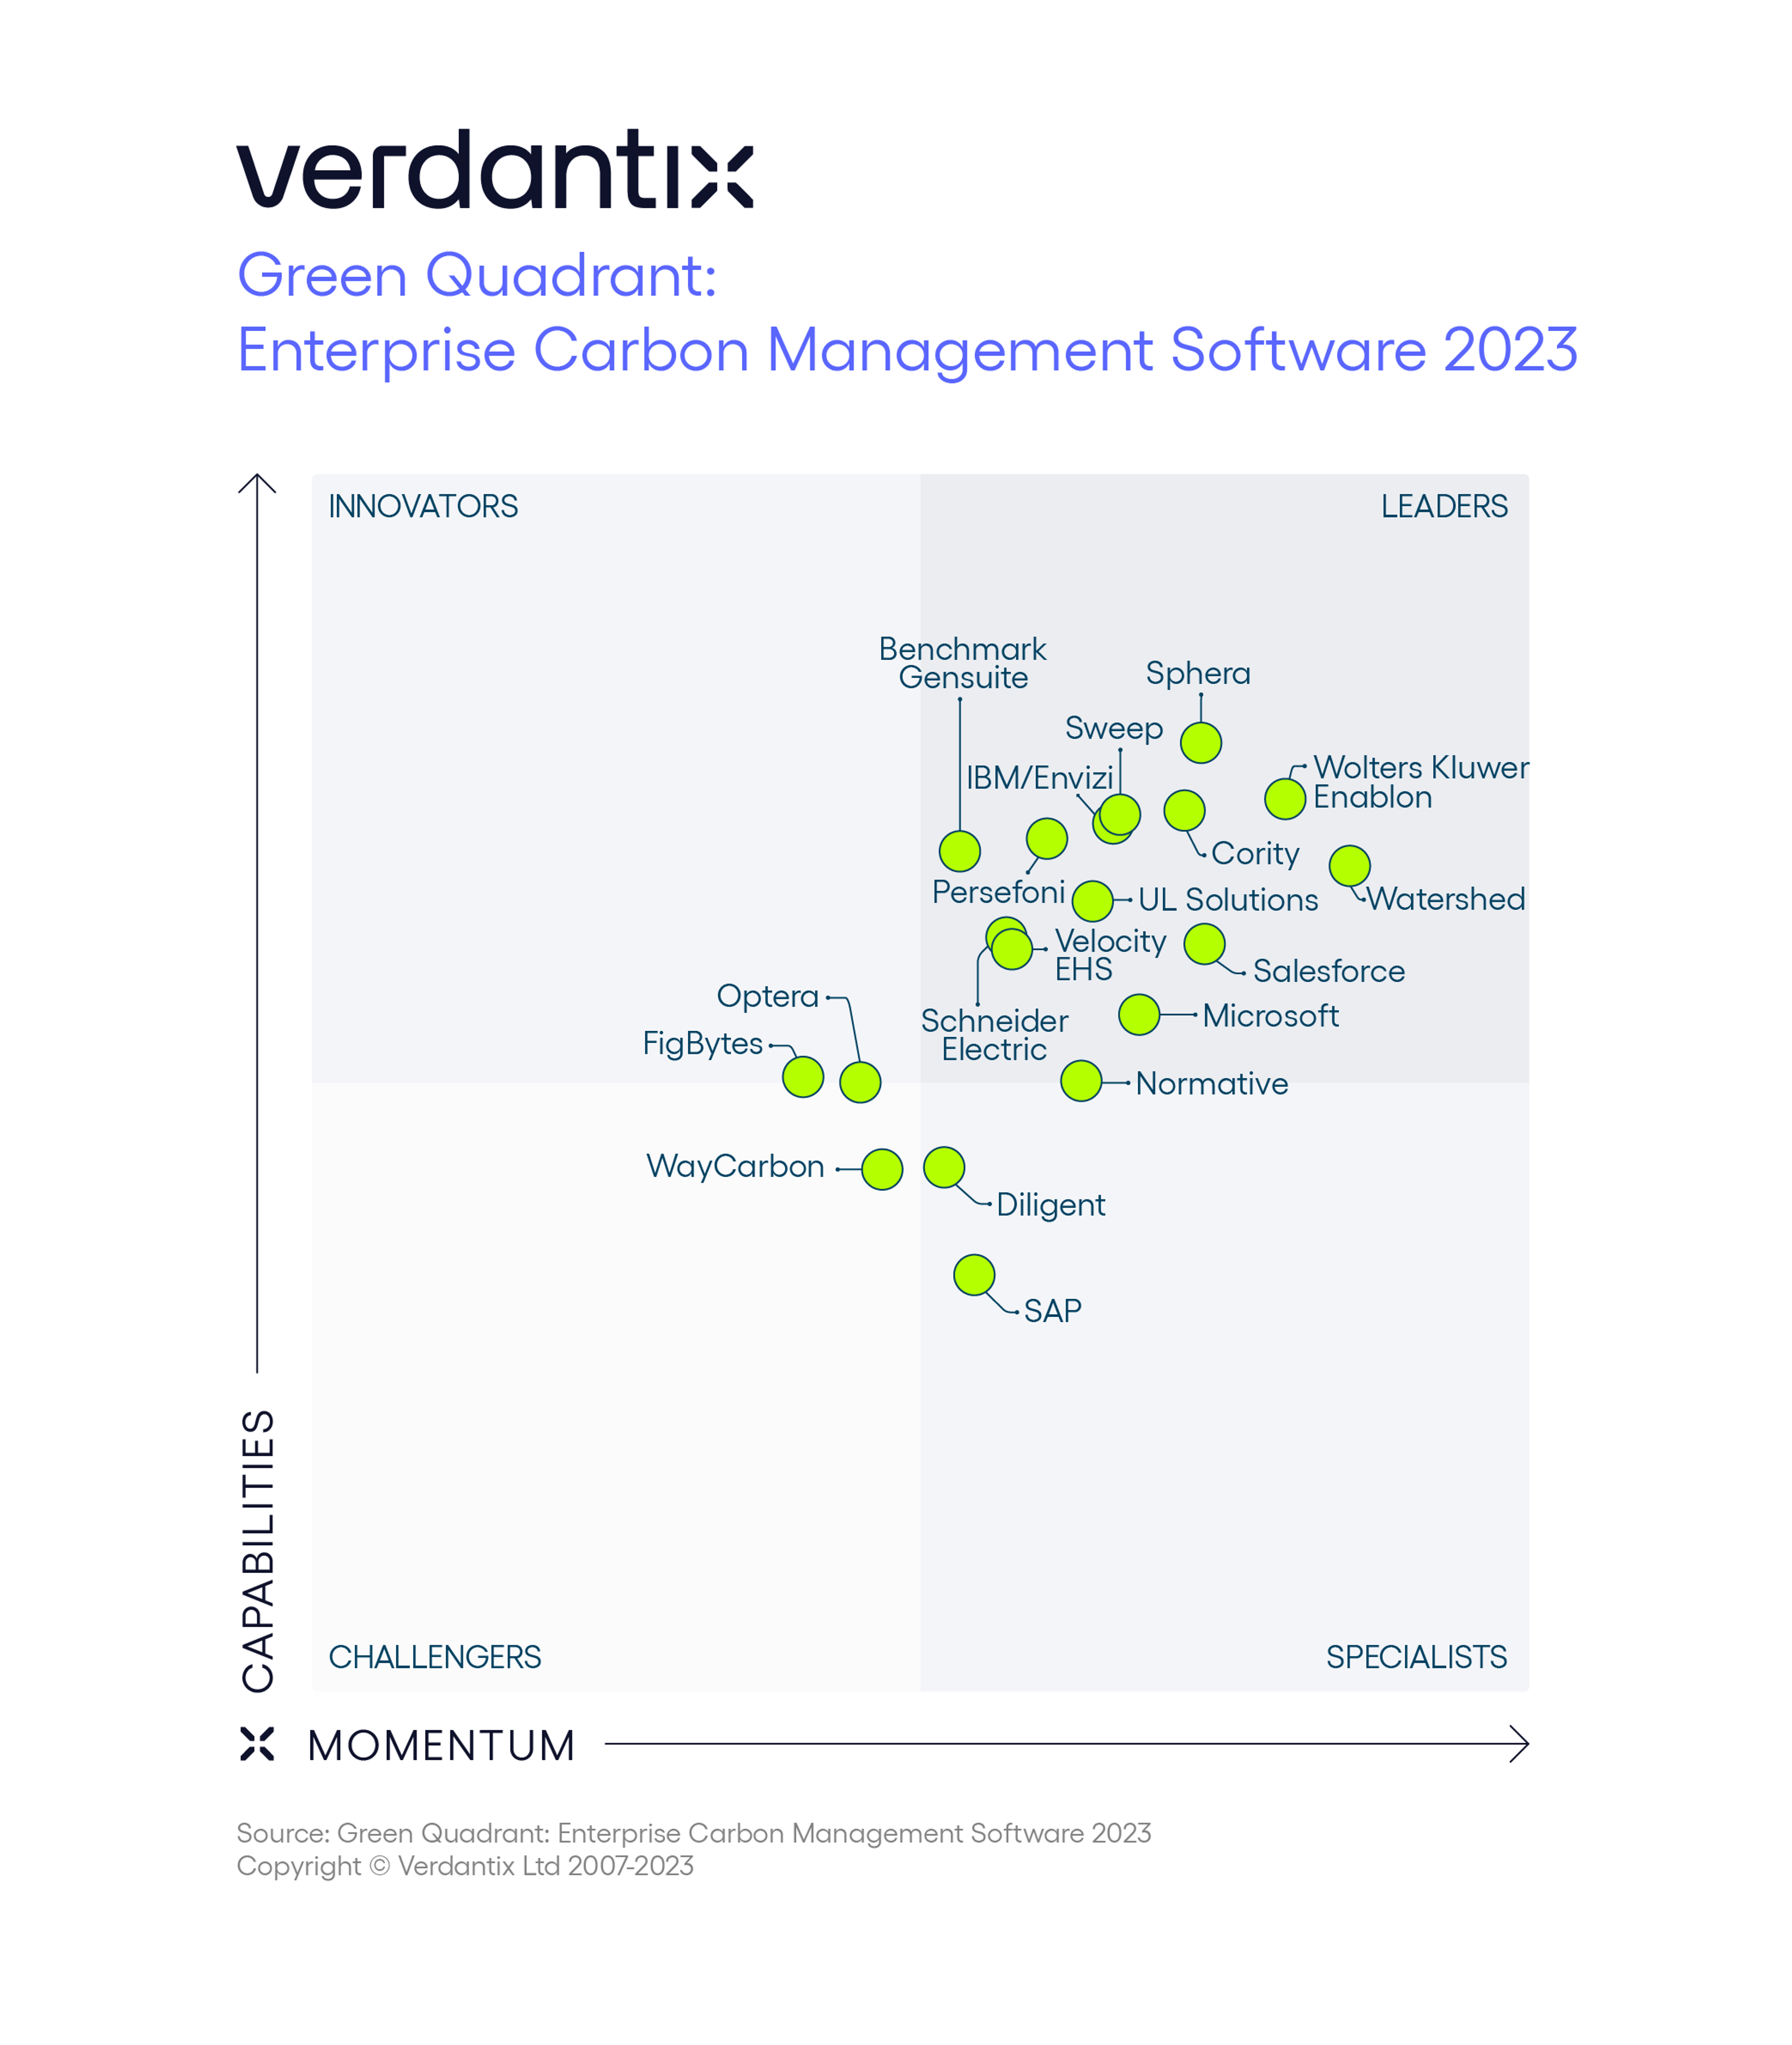 Verdantix Green Quadrant for Enterprise Carbon Management Software